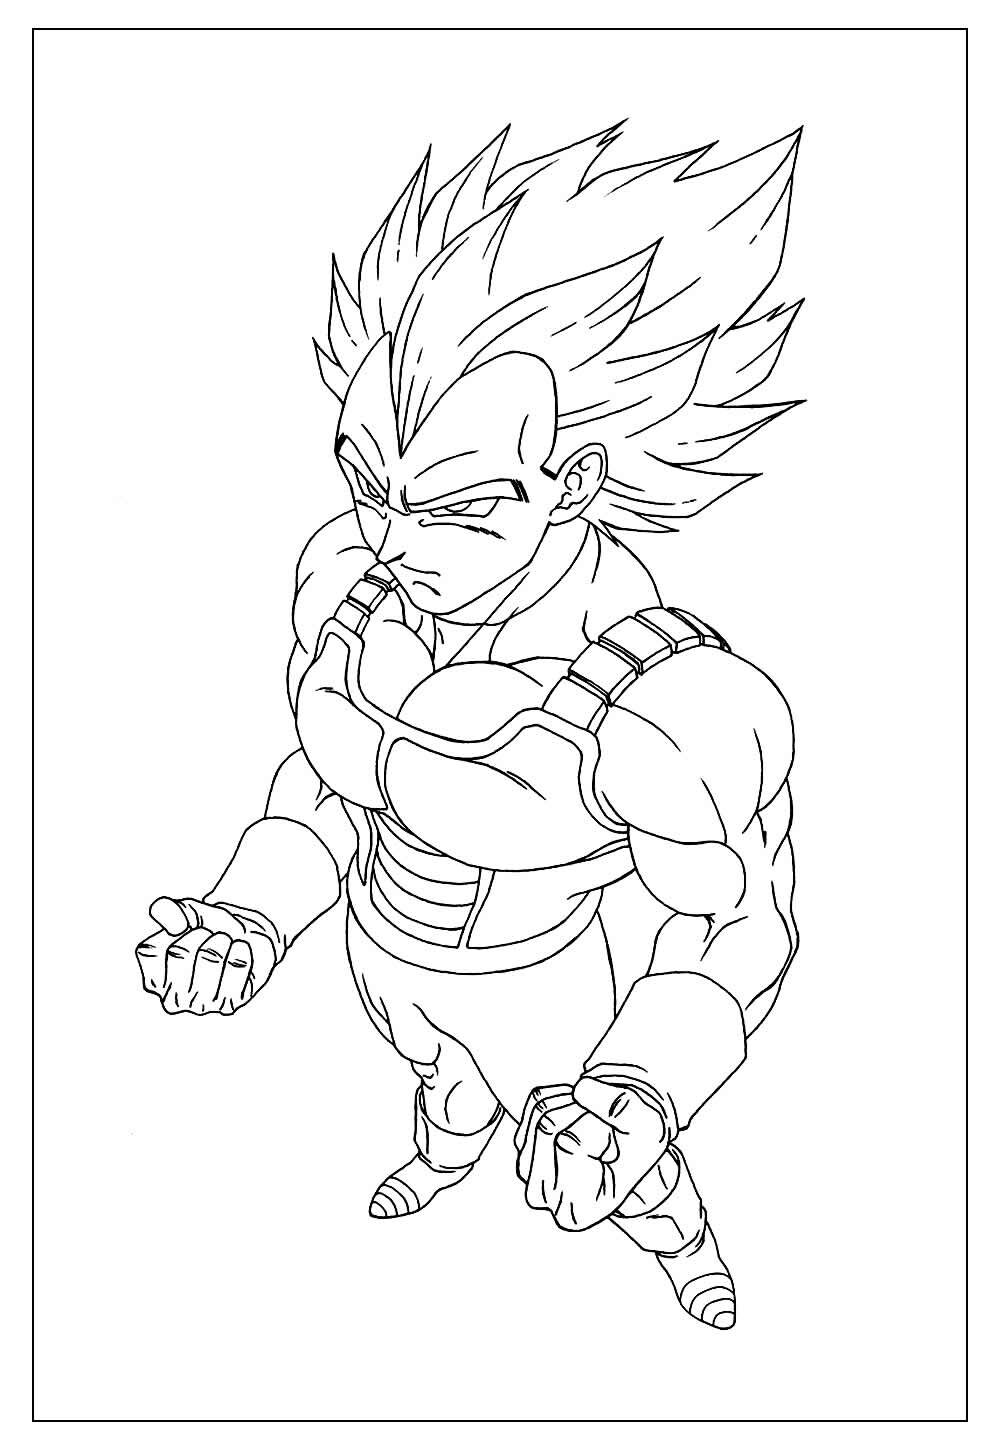 Vegeta e Goku para colorir e pintar - Imprimir Desenhos